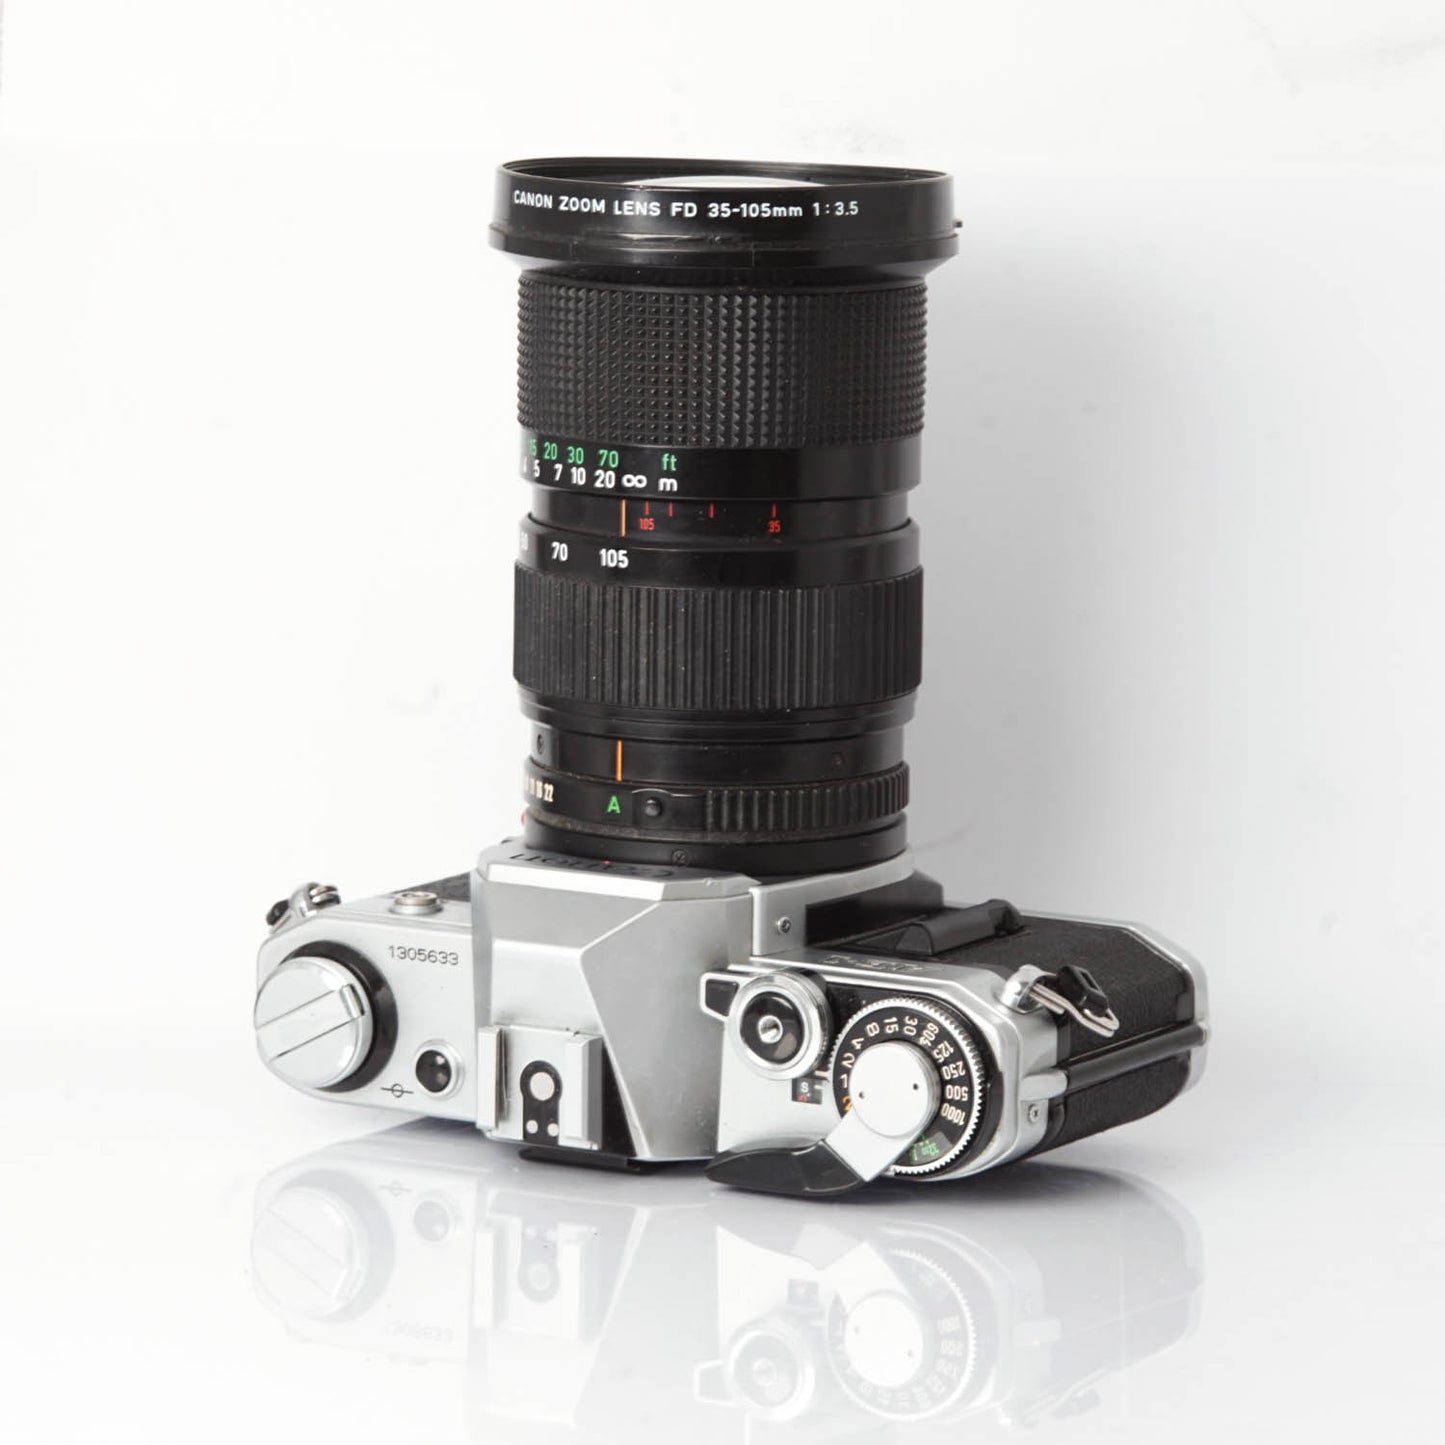 Canon AE1 35-105mm f/3.5